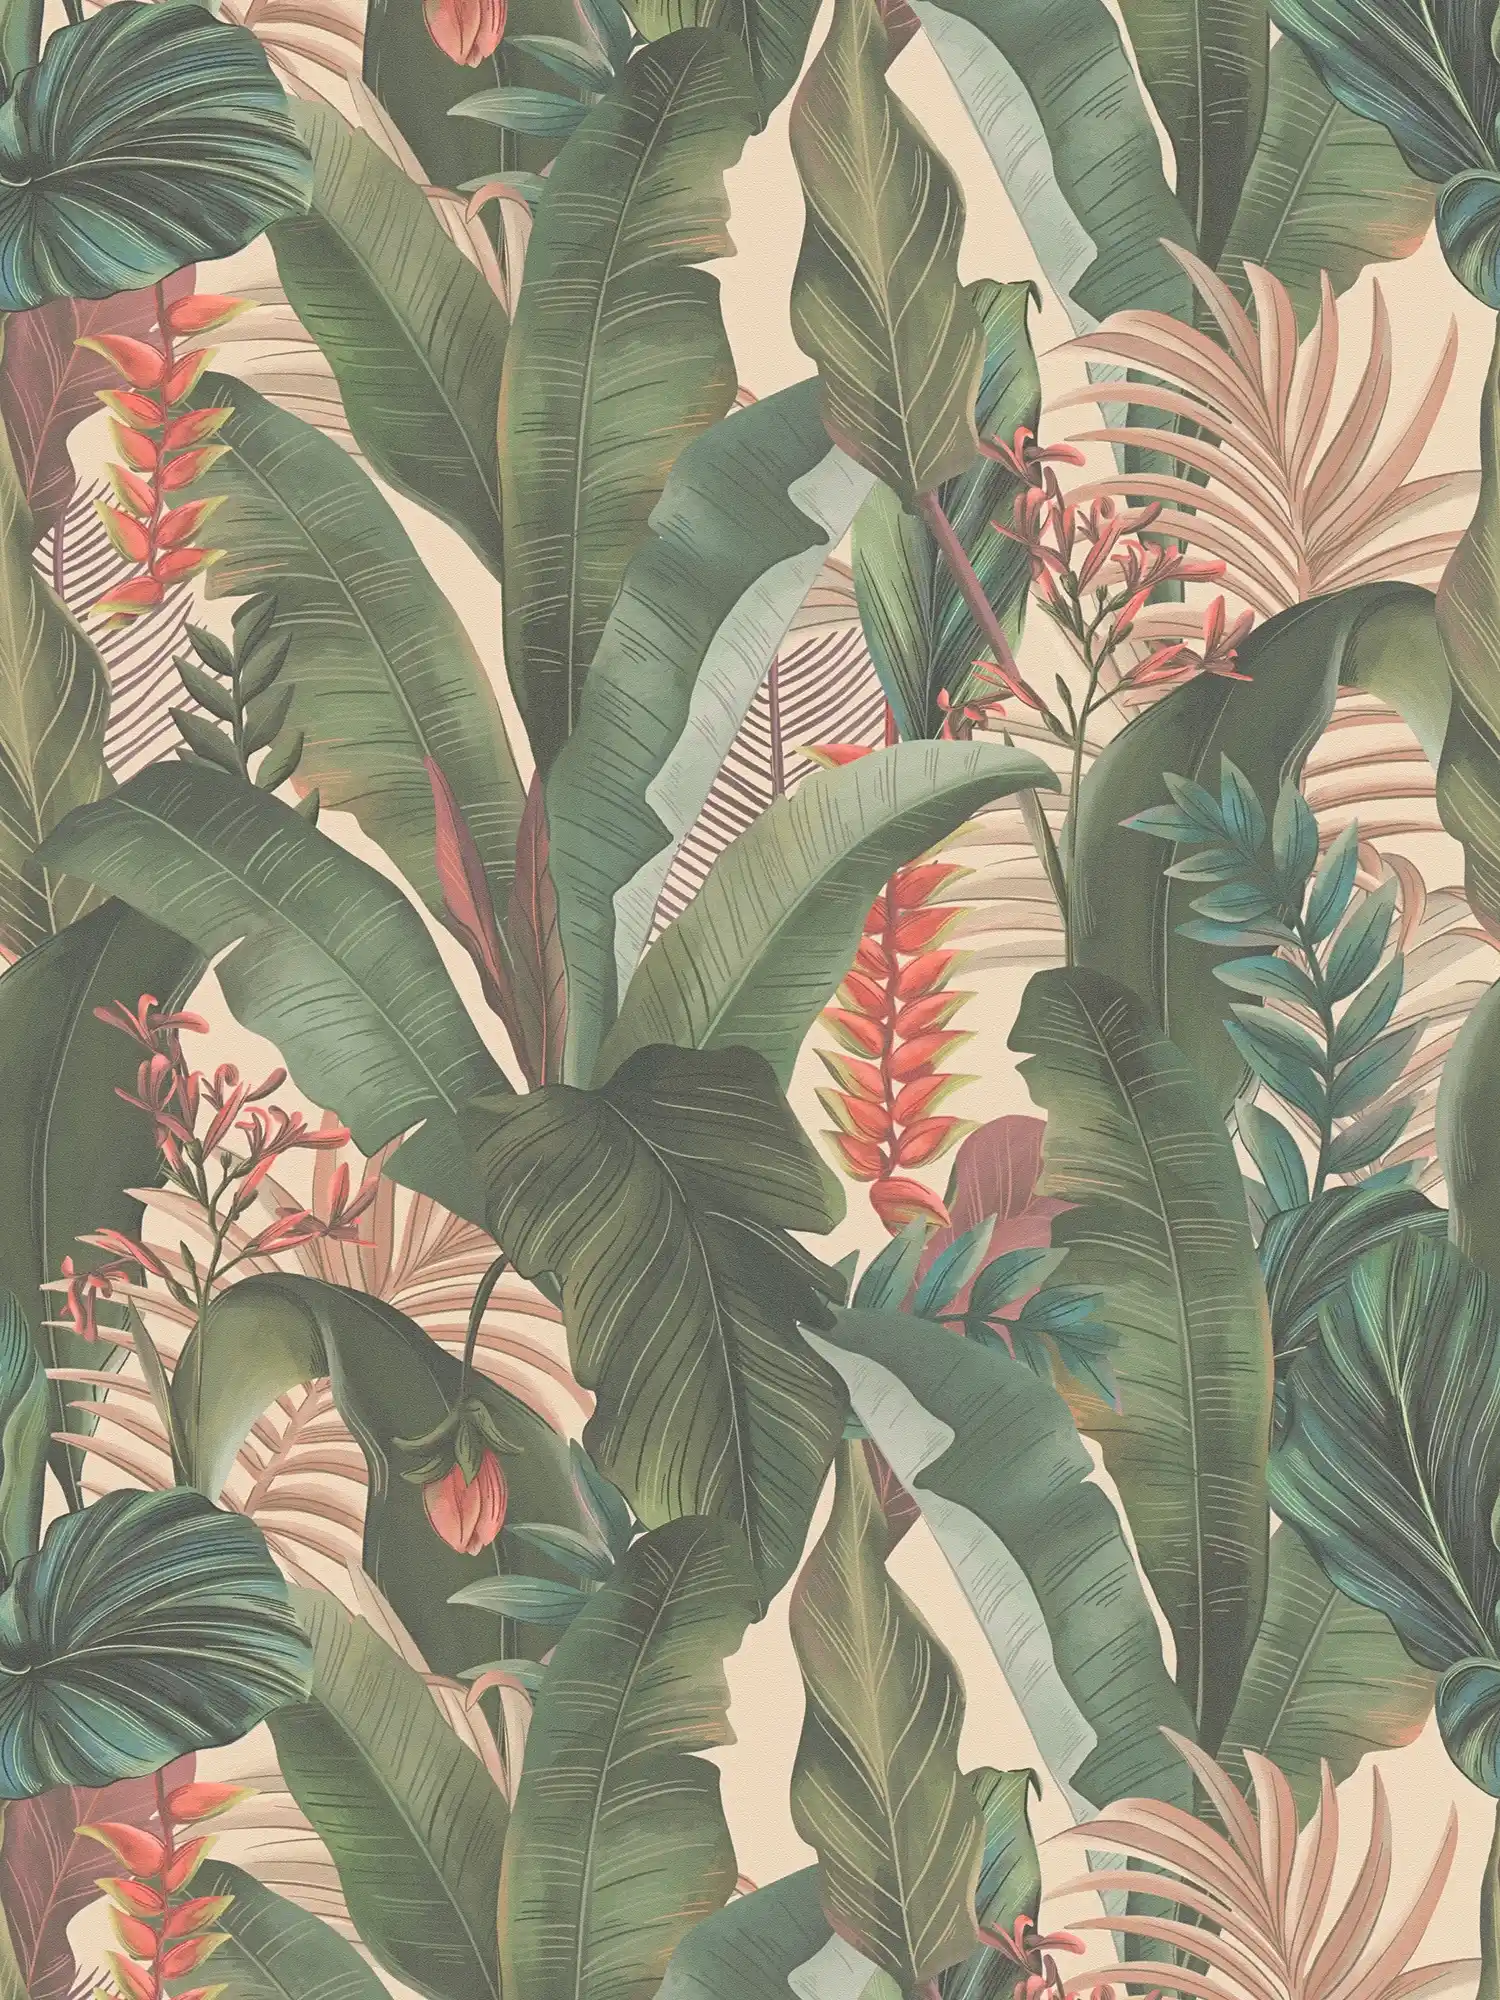         Jungle behang met palmbladeren en bloemen in bloemmotief mat structuur - Beige, Groen, Roze
    